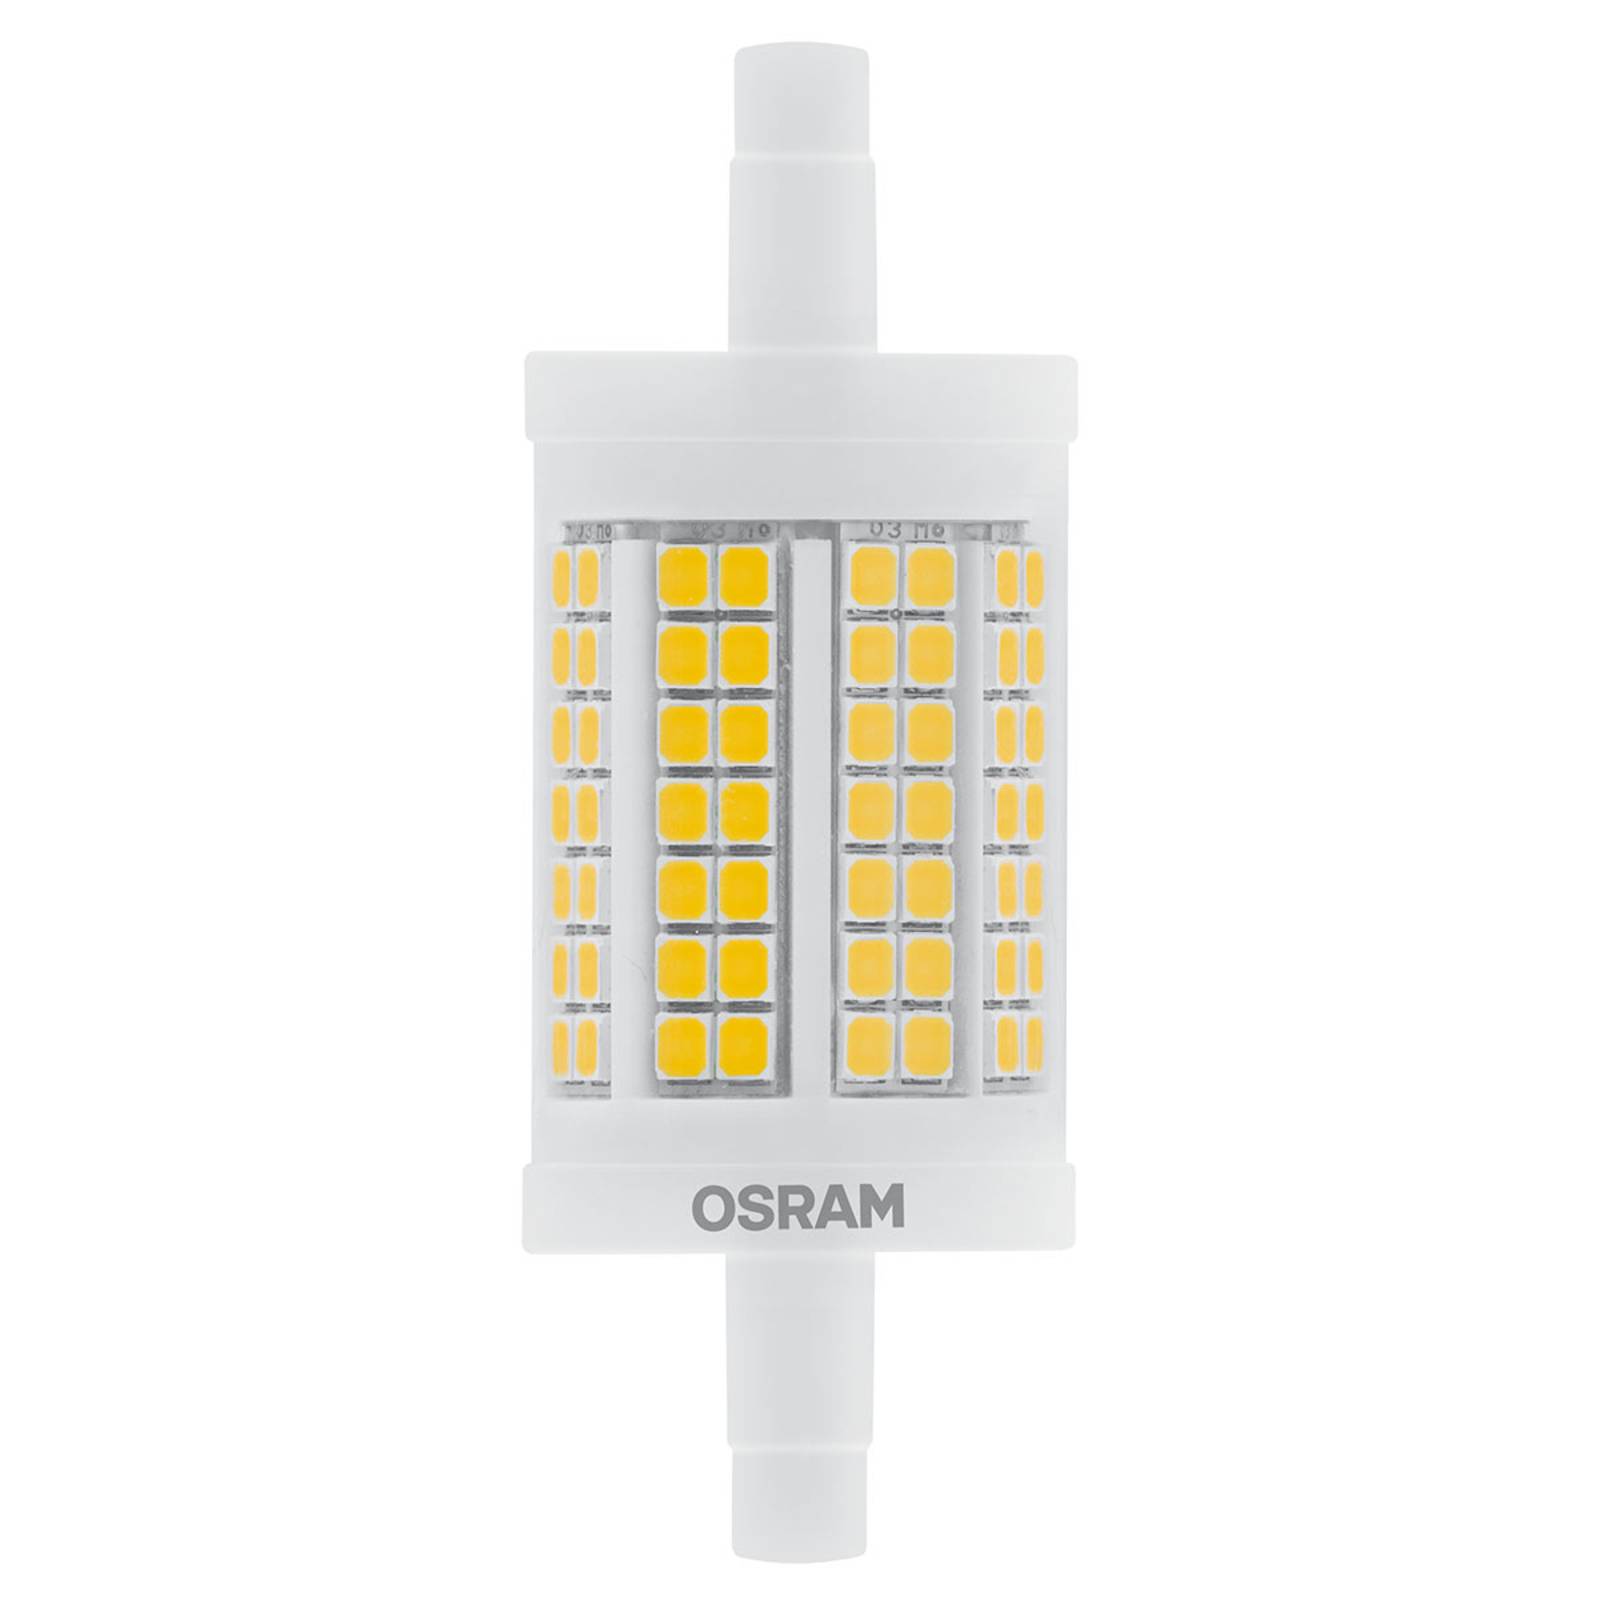 OSRAM LED rúdizzó R7s 12W, meleg fehér, 1 521 lm